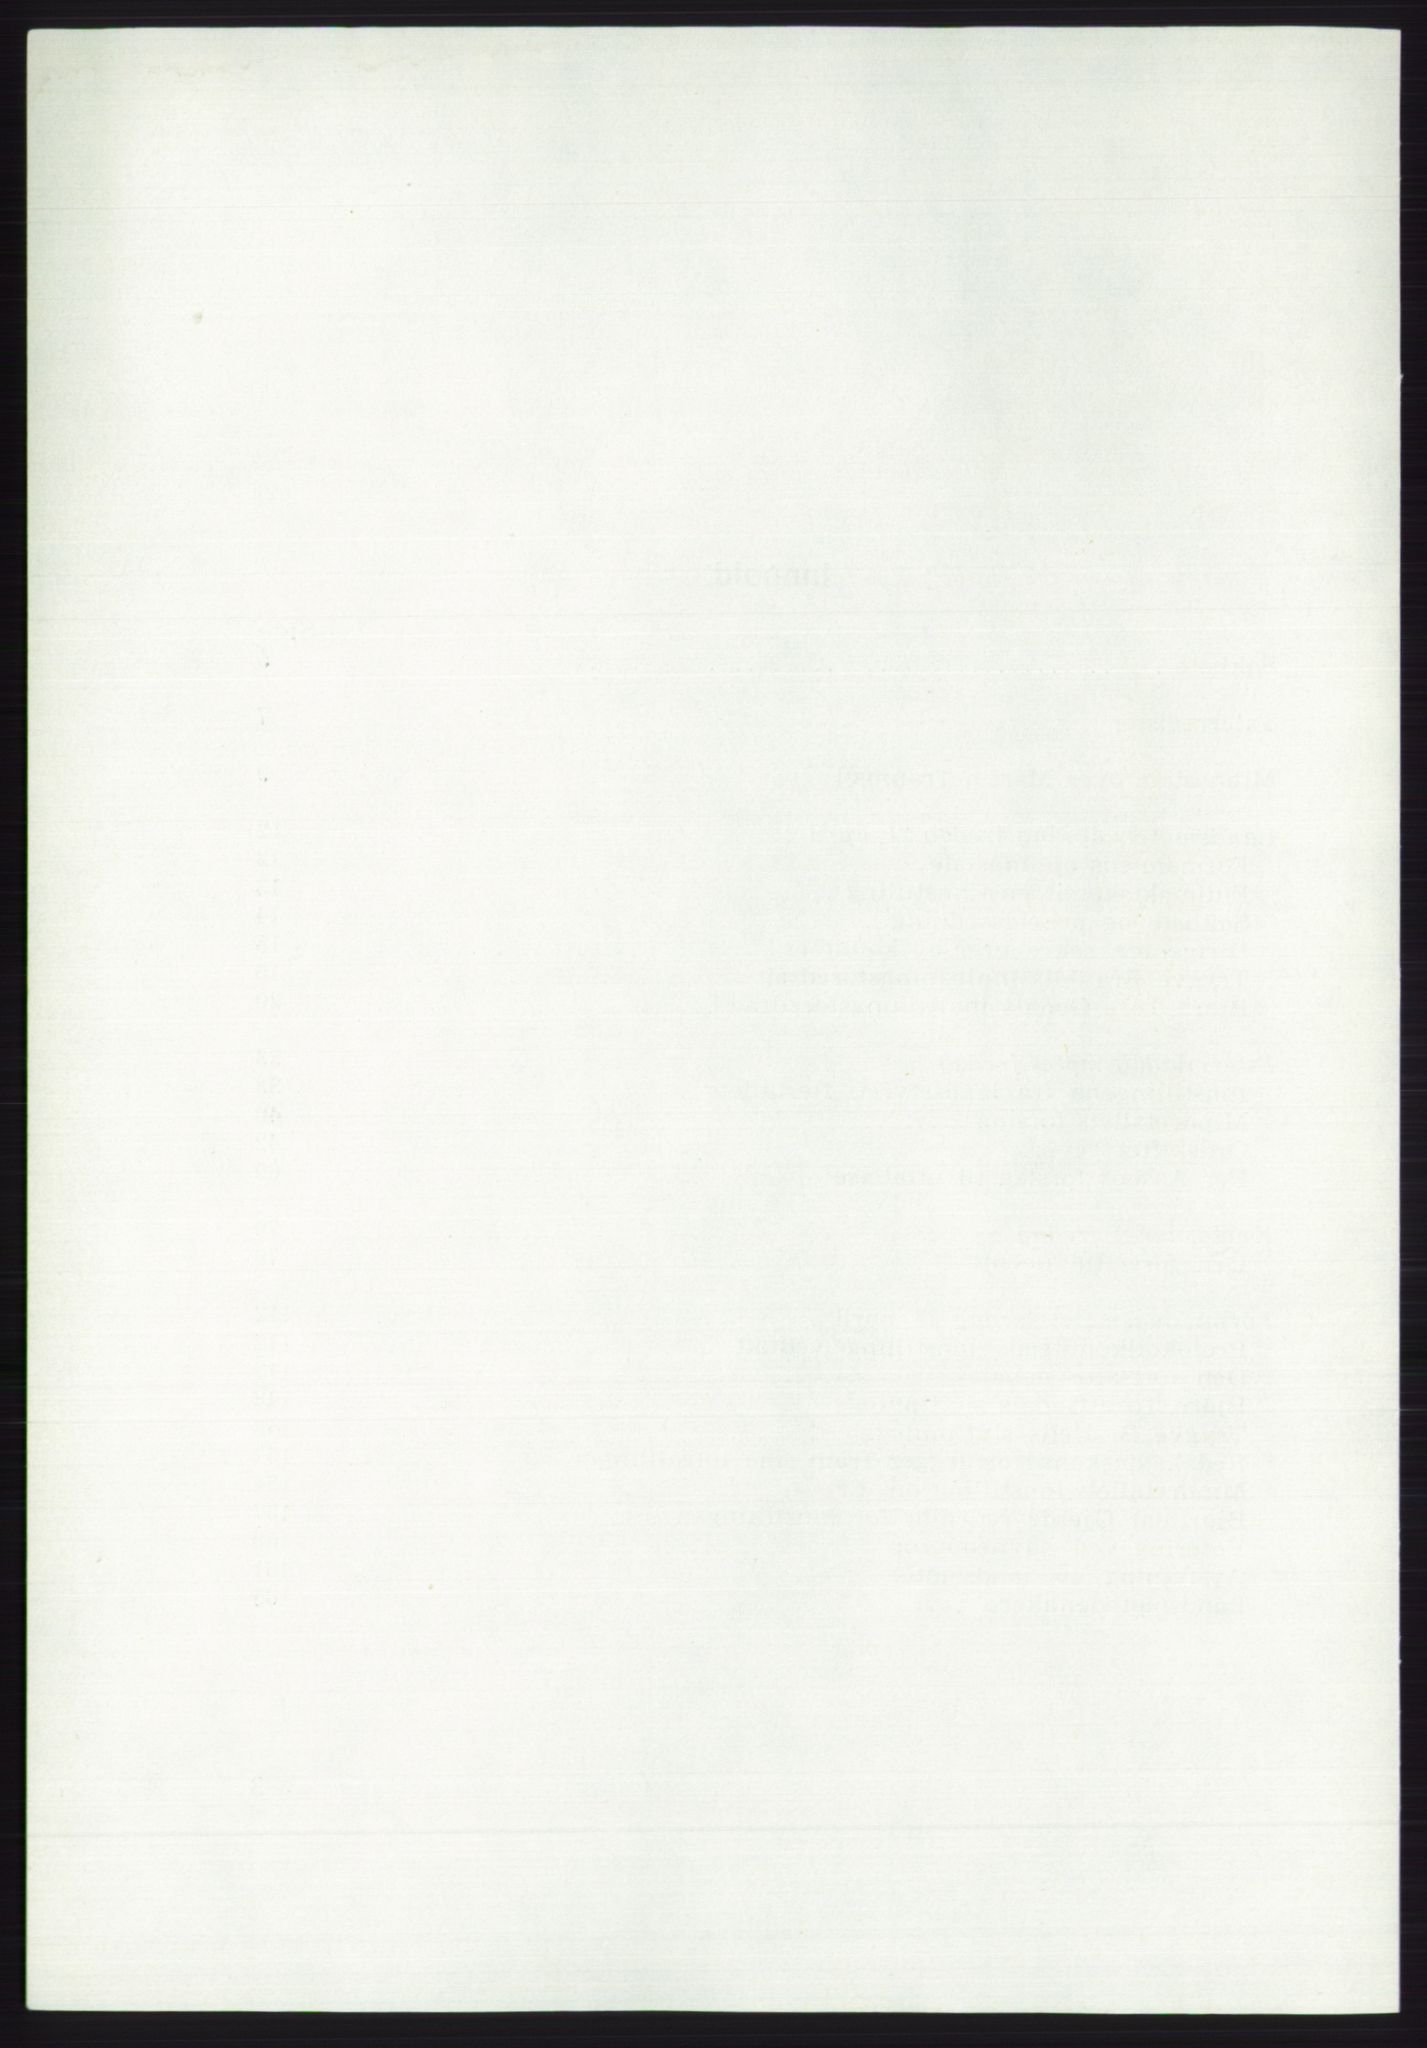 Det norske Arbeiderparti - publikasjoner, AAB/-/-/-: Protokoll over forhandlingene på det ekstraordinære landsmøte 21.-22. april 1972, 1972, s. 4